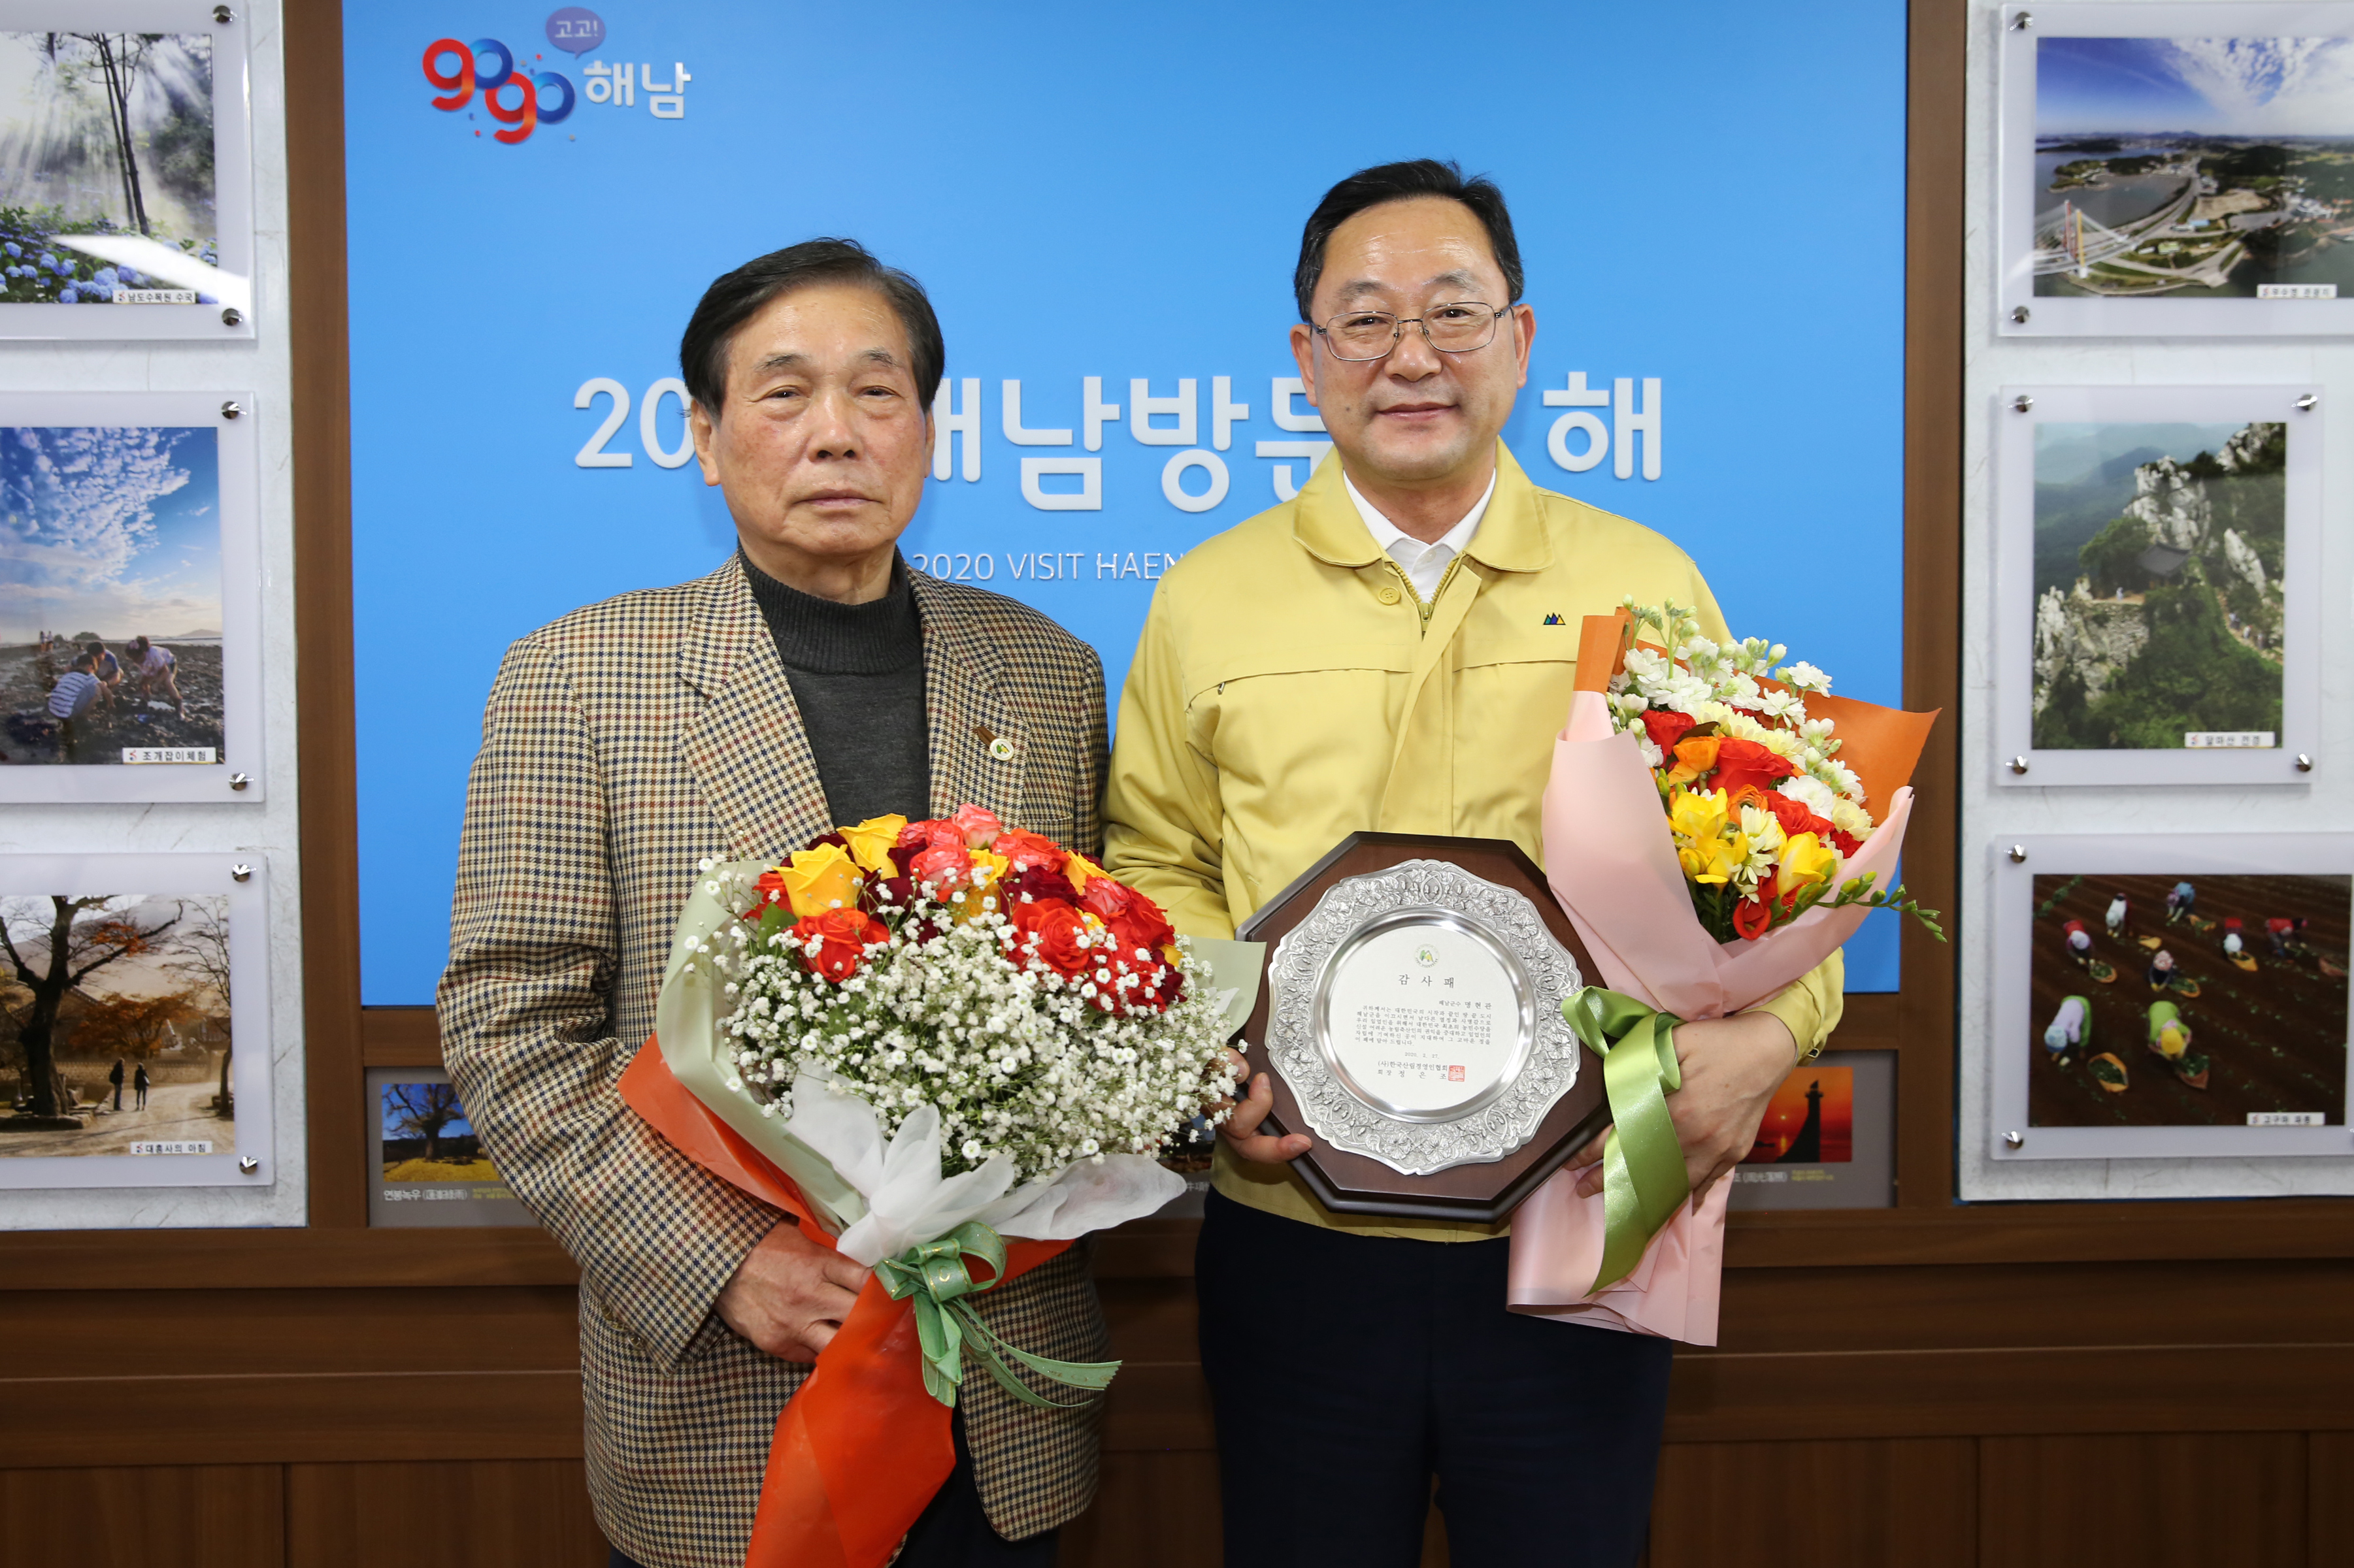 명현관(오른쪽) 해남군수가 농림축산어업인의 권익신장에 기여해 온 공로로 한국산림경영인협회로부터 감사패를 받았다.